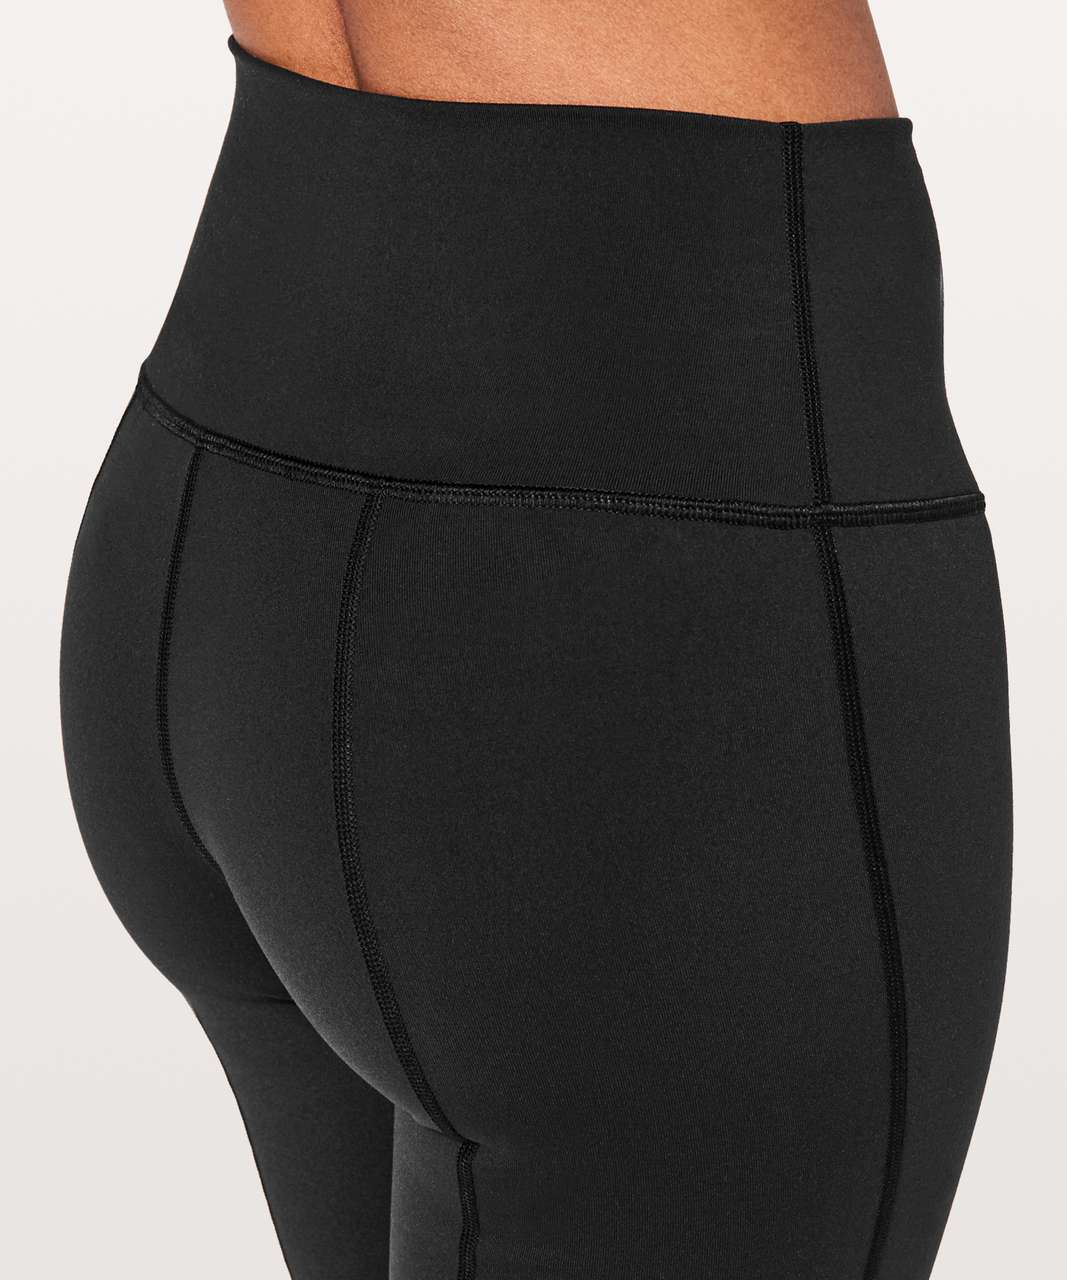 LULULEMON CROP LEGGINGS Size 2 Side & Zipper Back Pockets Black Yoga  Activewear £29.76 - PicClick UK